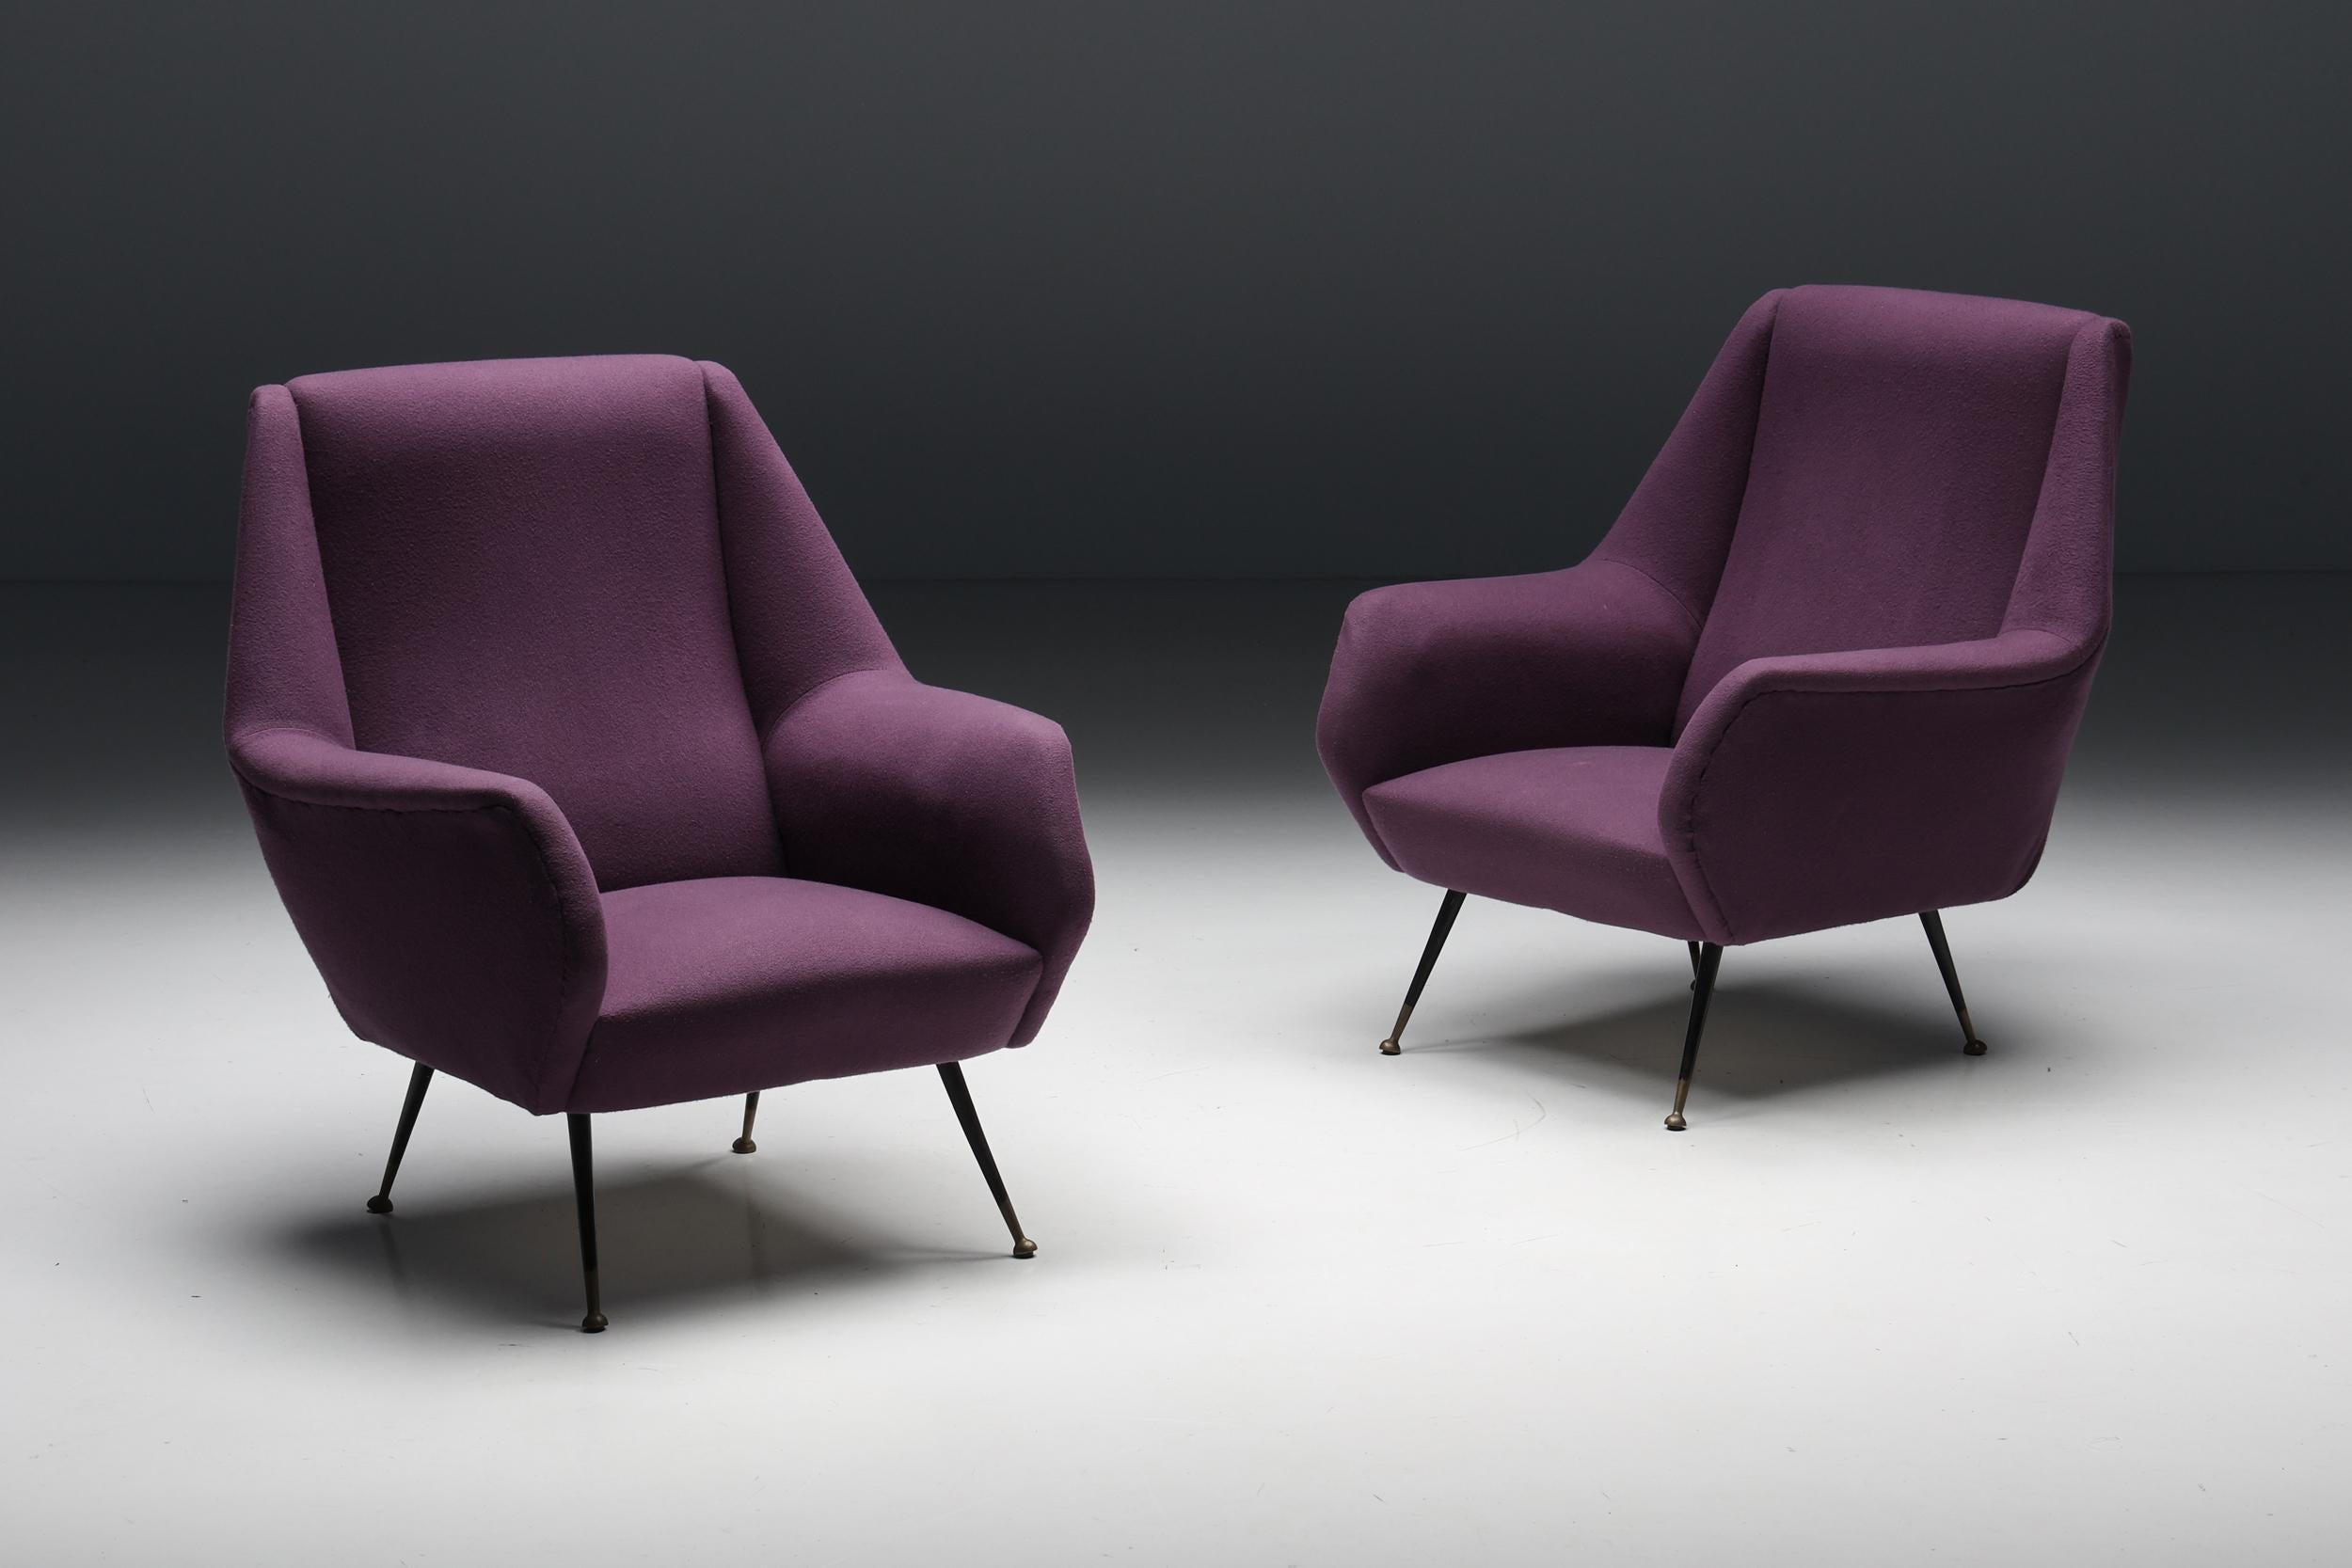 Paire de fauteuils italiens, par Ico Parisi, tissu violet.
Pieds en métal noir qui se terminent par des pieds ronds en laiton.
Chaises longues italiennes chics des années 1950 qui conviendraient parfaitement à un intérieur éclectique d'inspiration